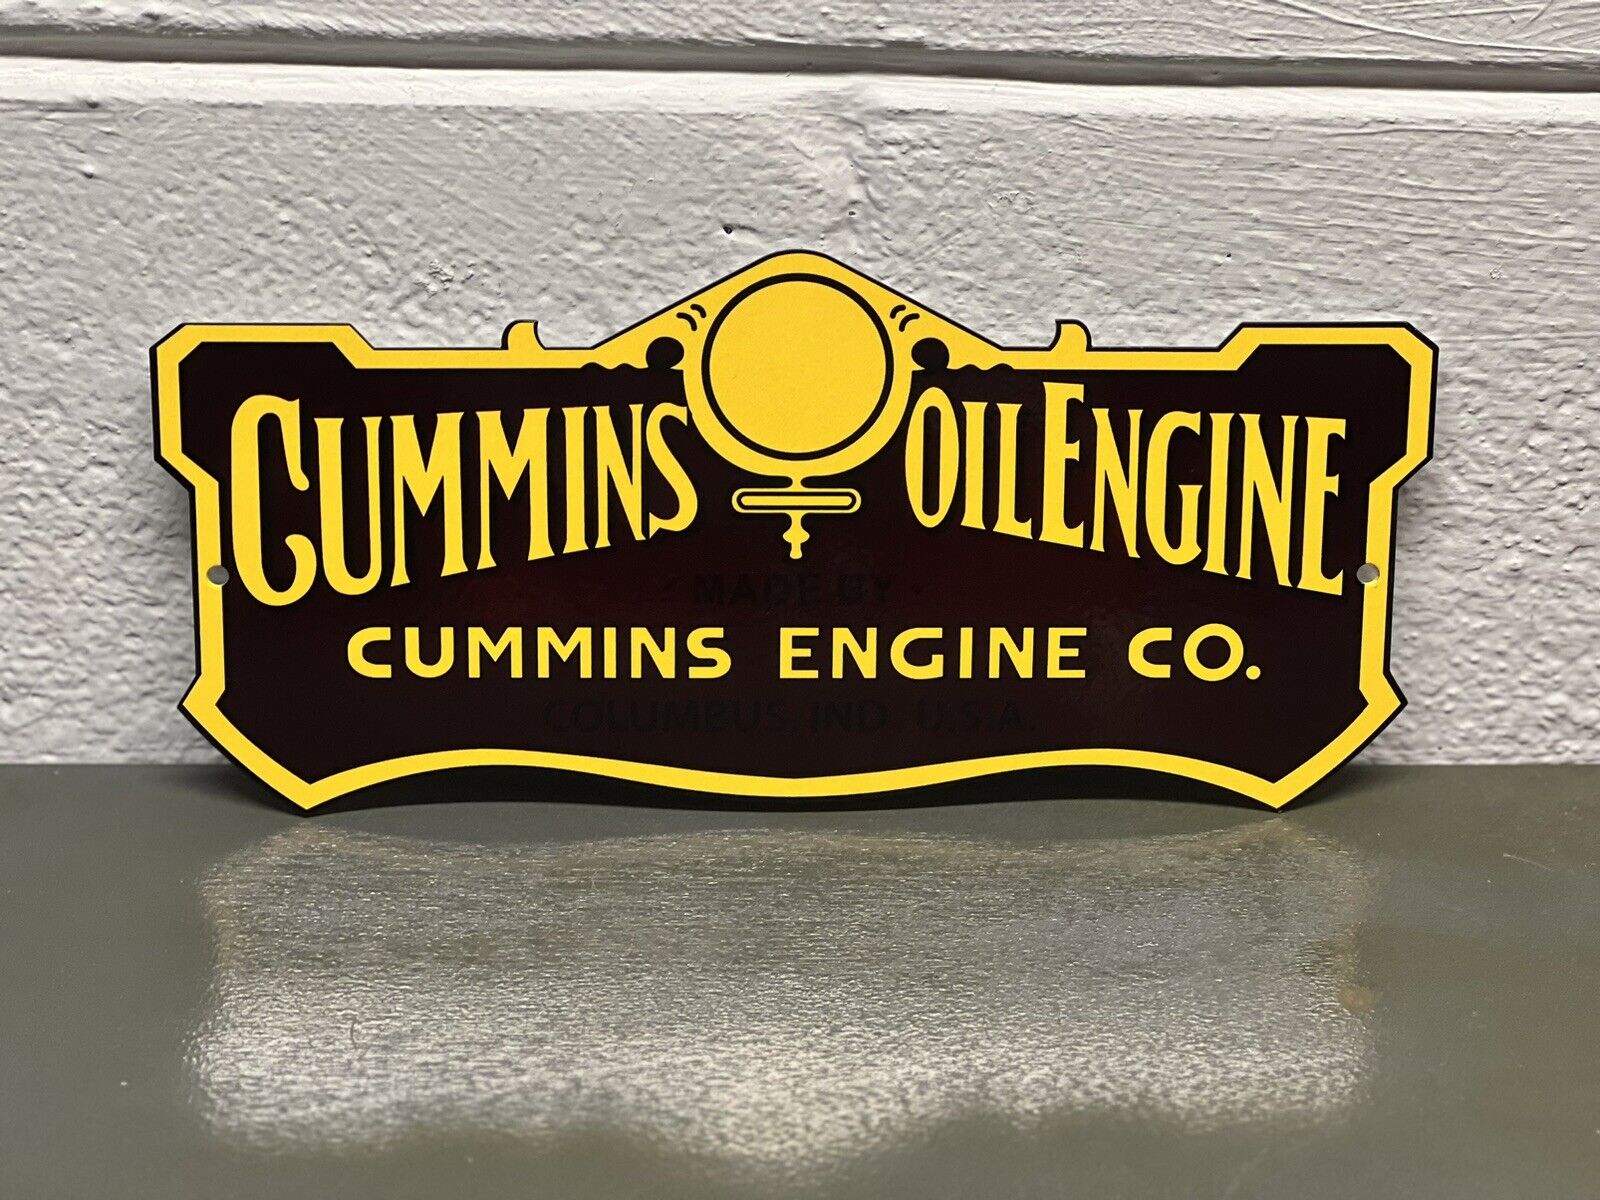 Cummins Diesel Metal Sign Dodge Truck Engine Red Ball Logo Garage Gas Oil Turbo